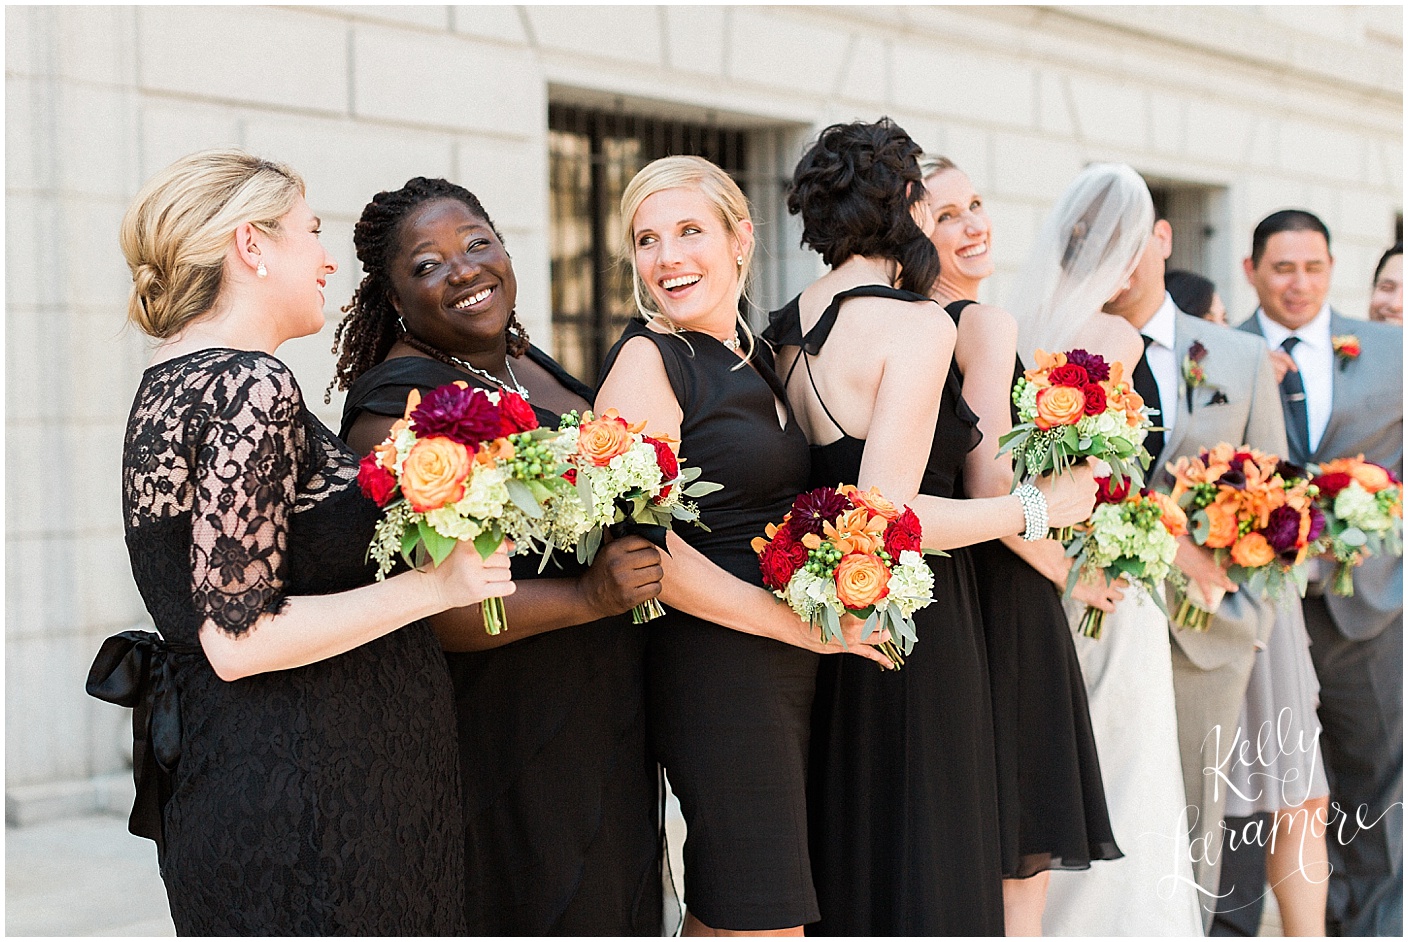 Weddings, Kelly Laramore Photography, 2015